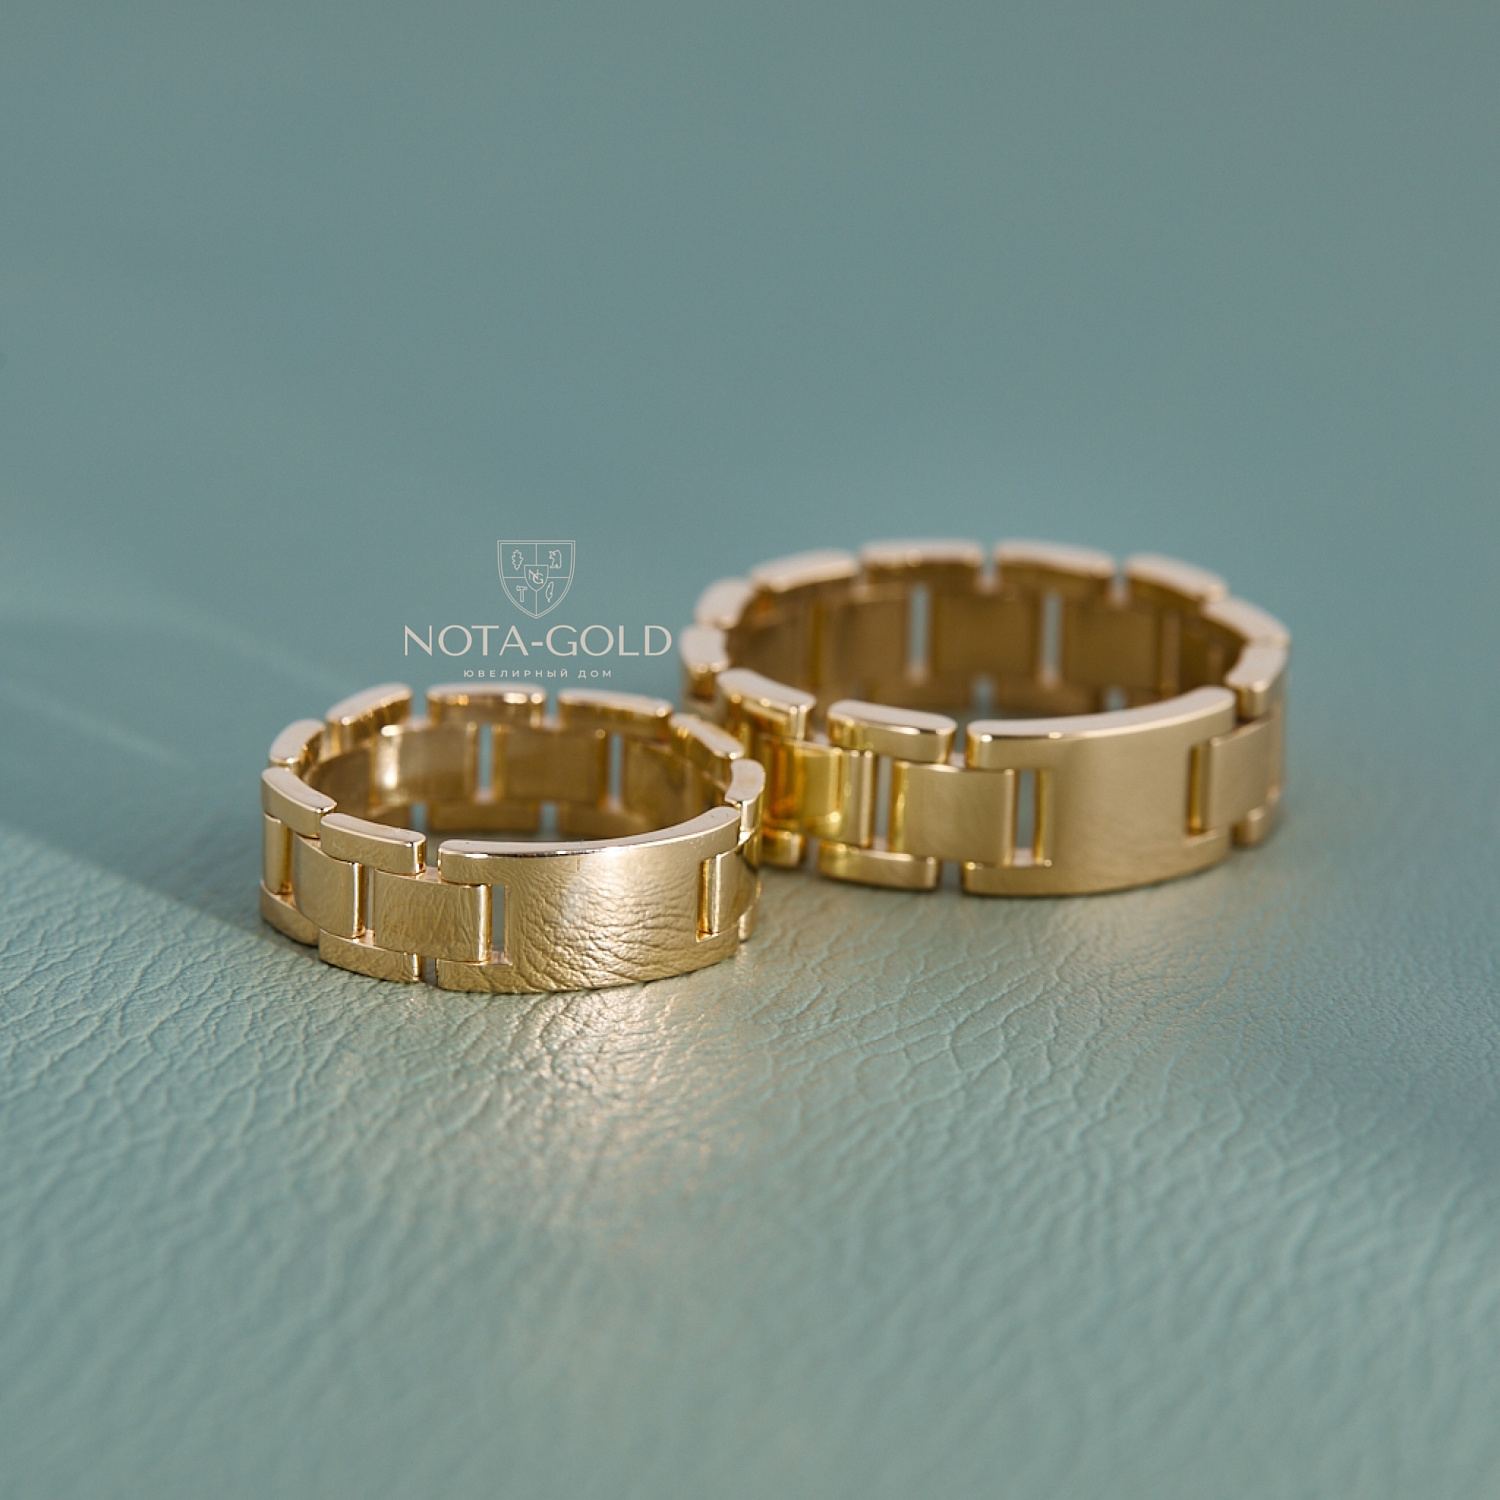 Обручальные кольца браслетного типа из желтого золота